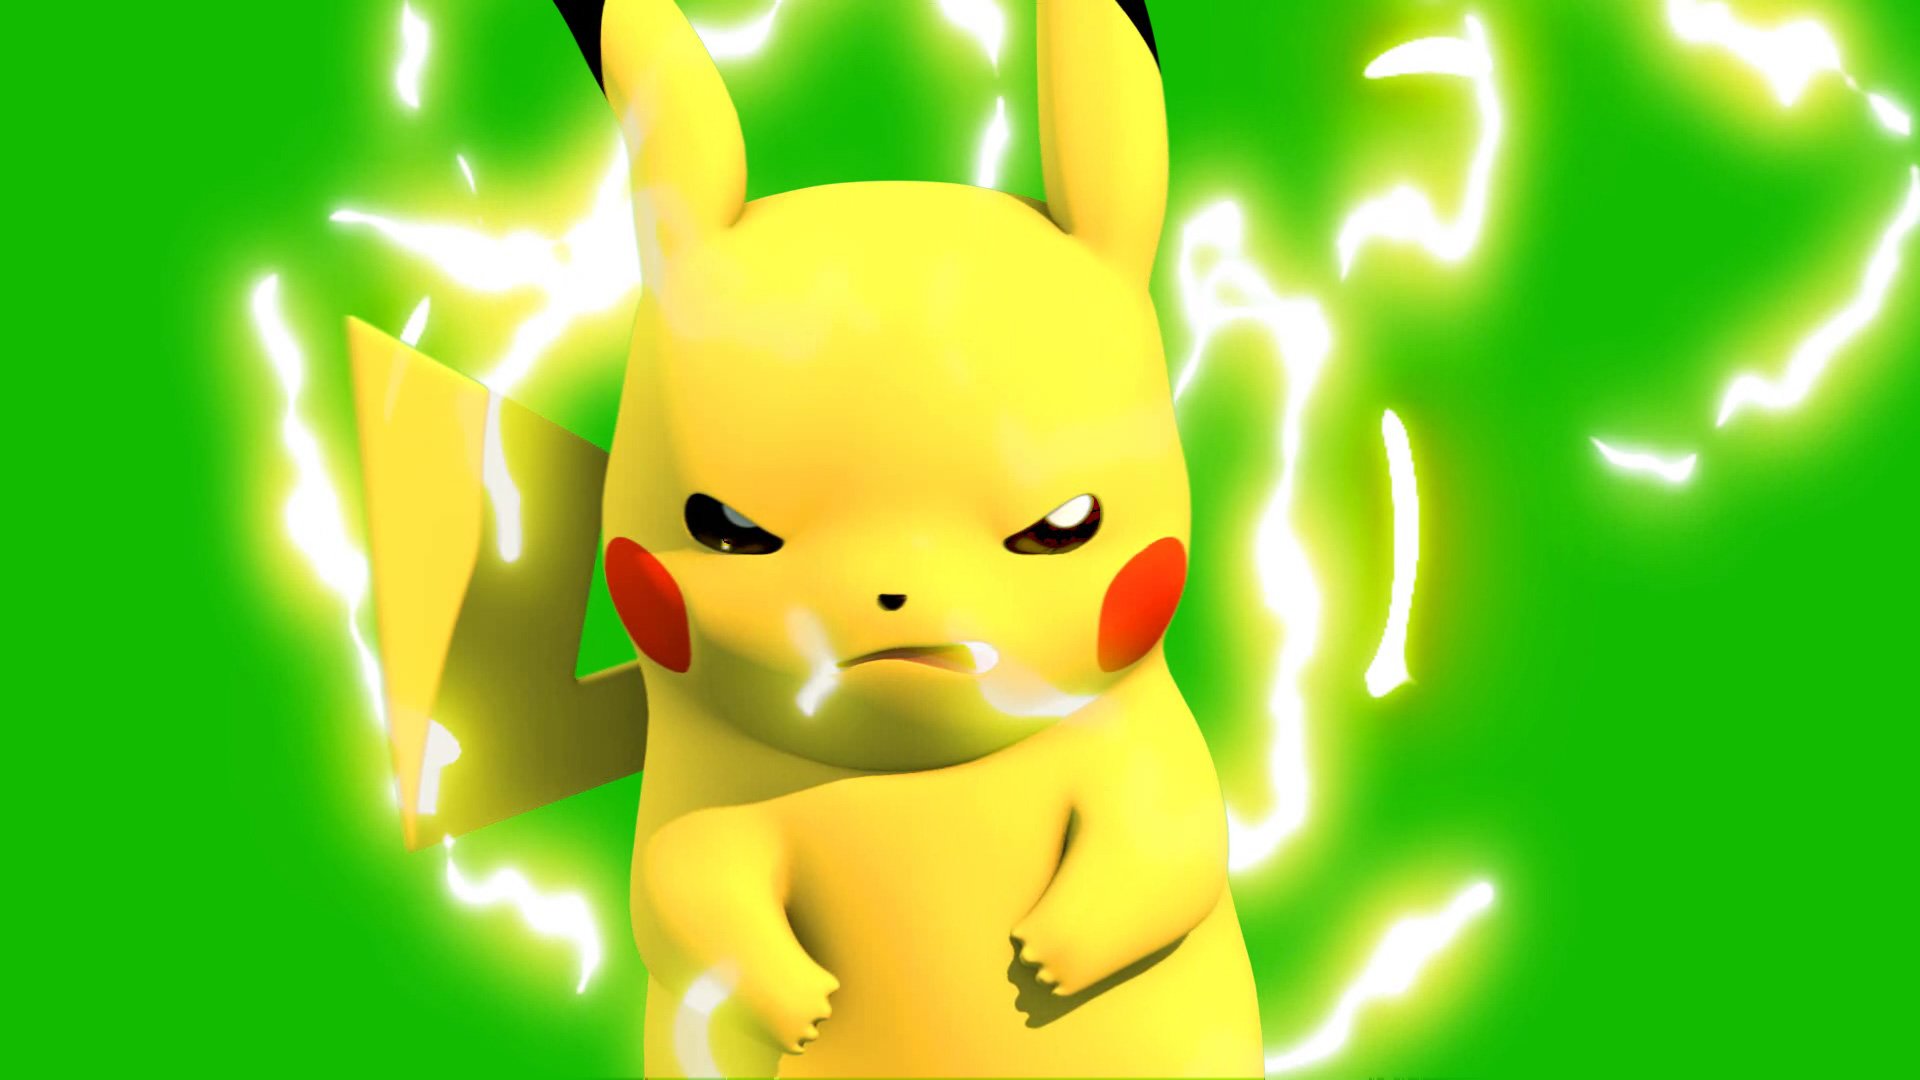 Pokemon giận dữ ảnh 3d